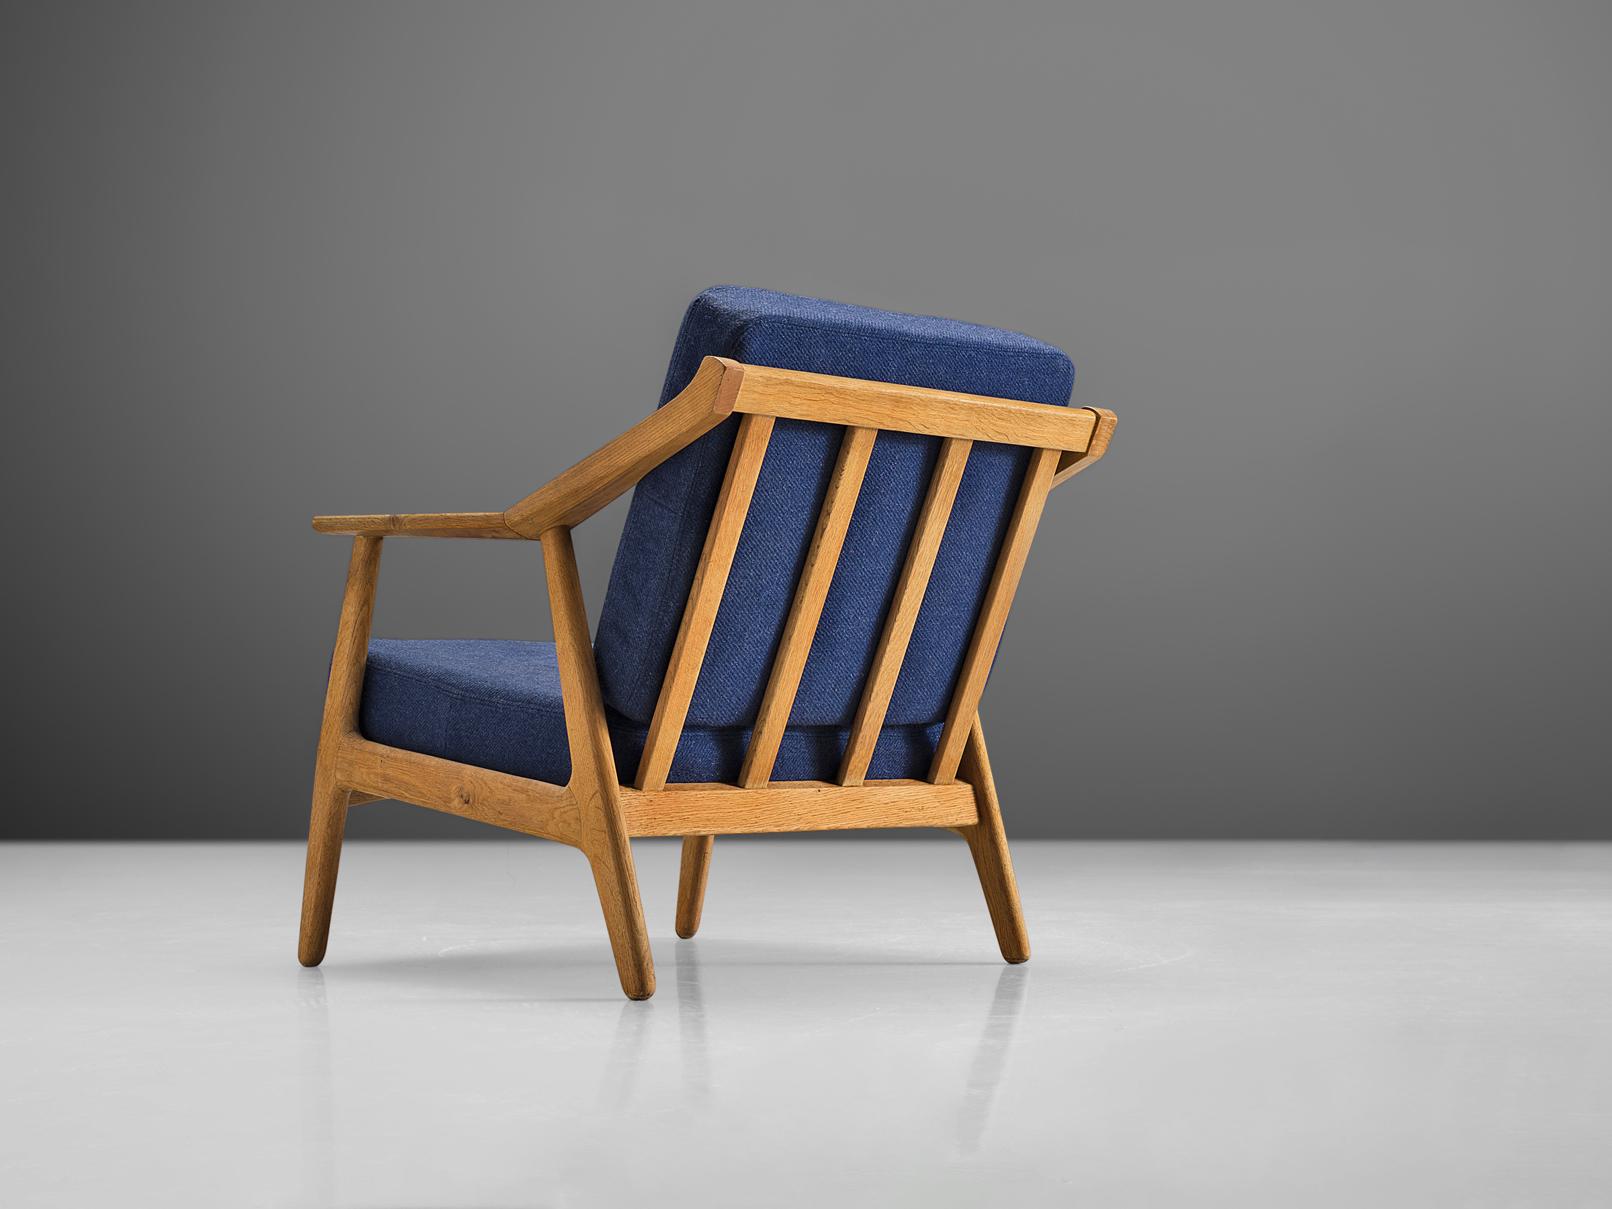 Fauteuil, chêne, tissu bleu, Danemark, années 1960

Ce fauteuil sculptural est doté d'un dossier à lattes et de quatre pieds circulaires. Les accoudoirs sont exécutés avec un angle au milieu et c'est également à cet endroit que les pieds du dossier